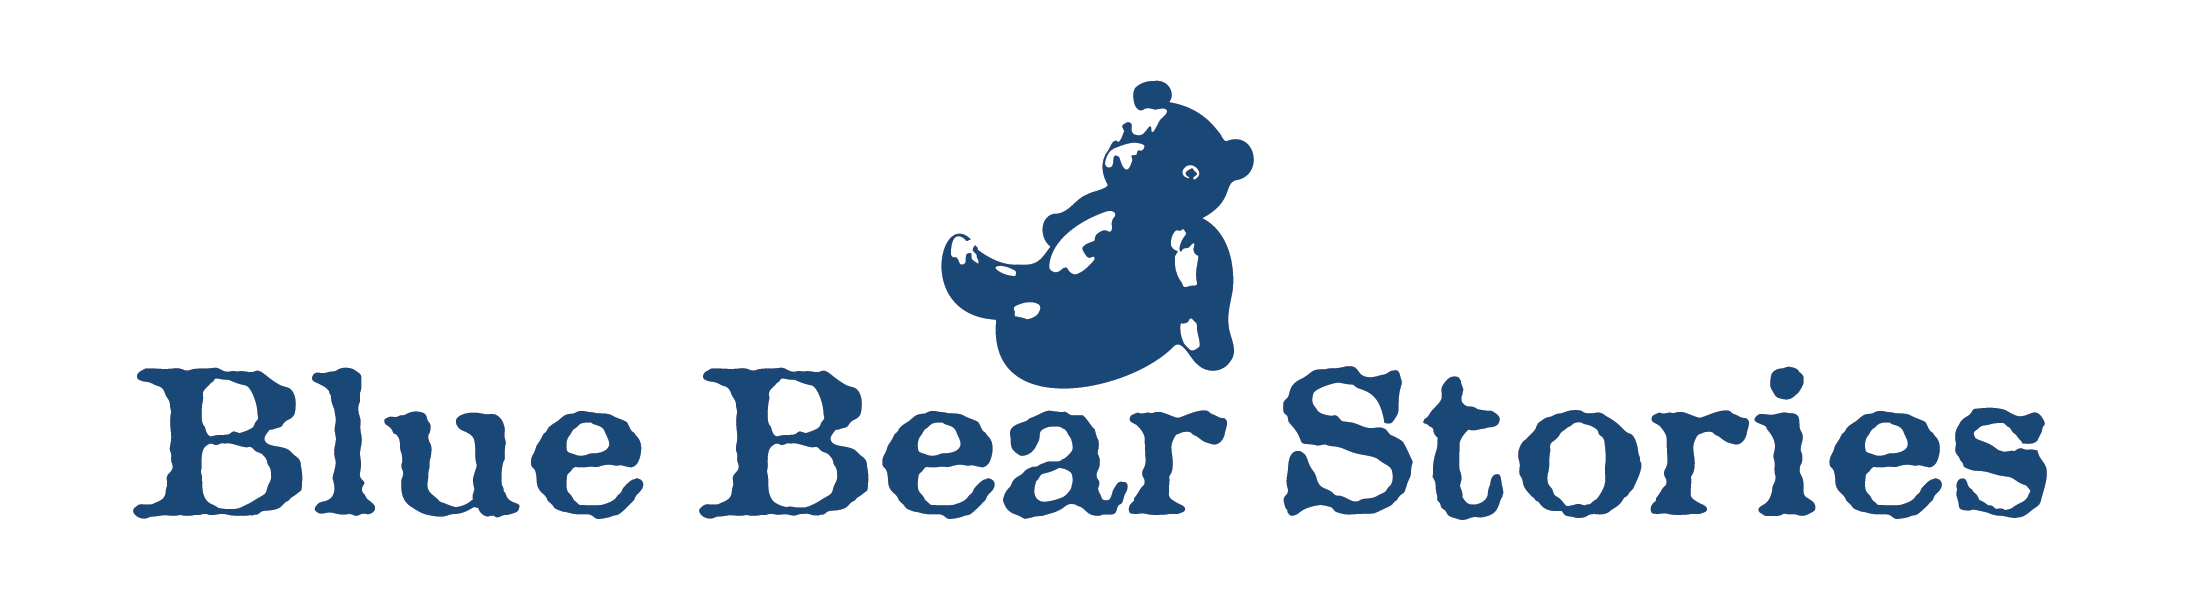 Blue Bear Stories